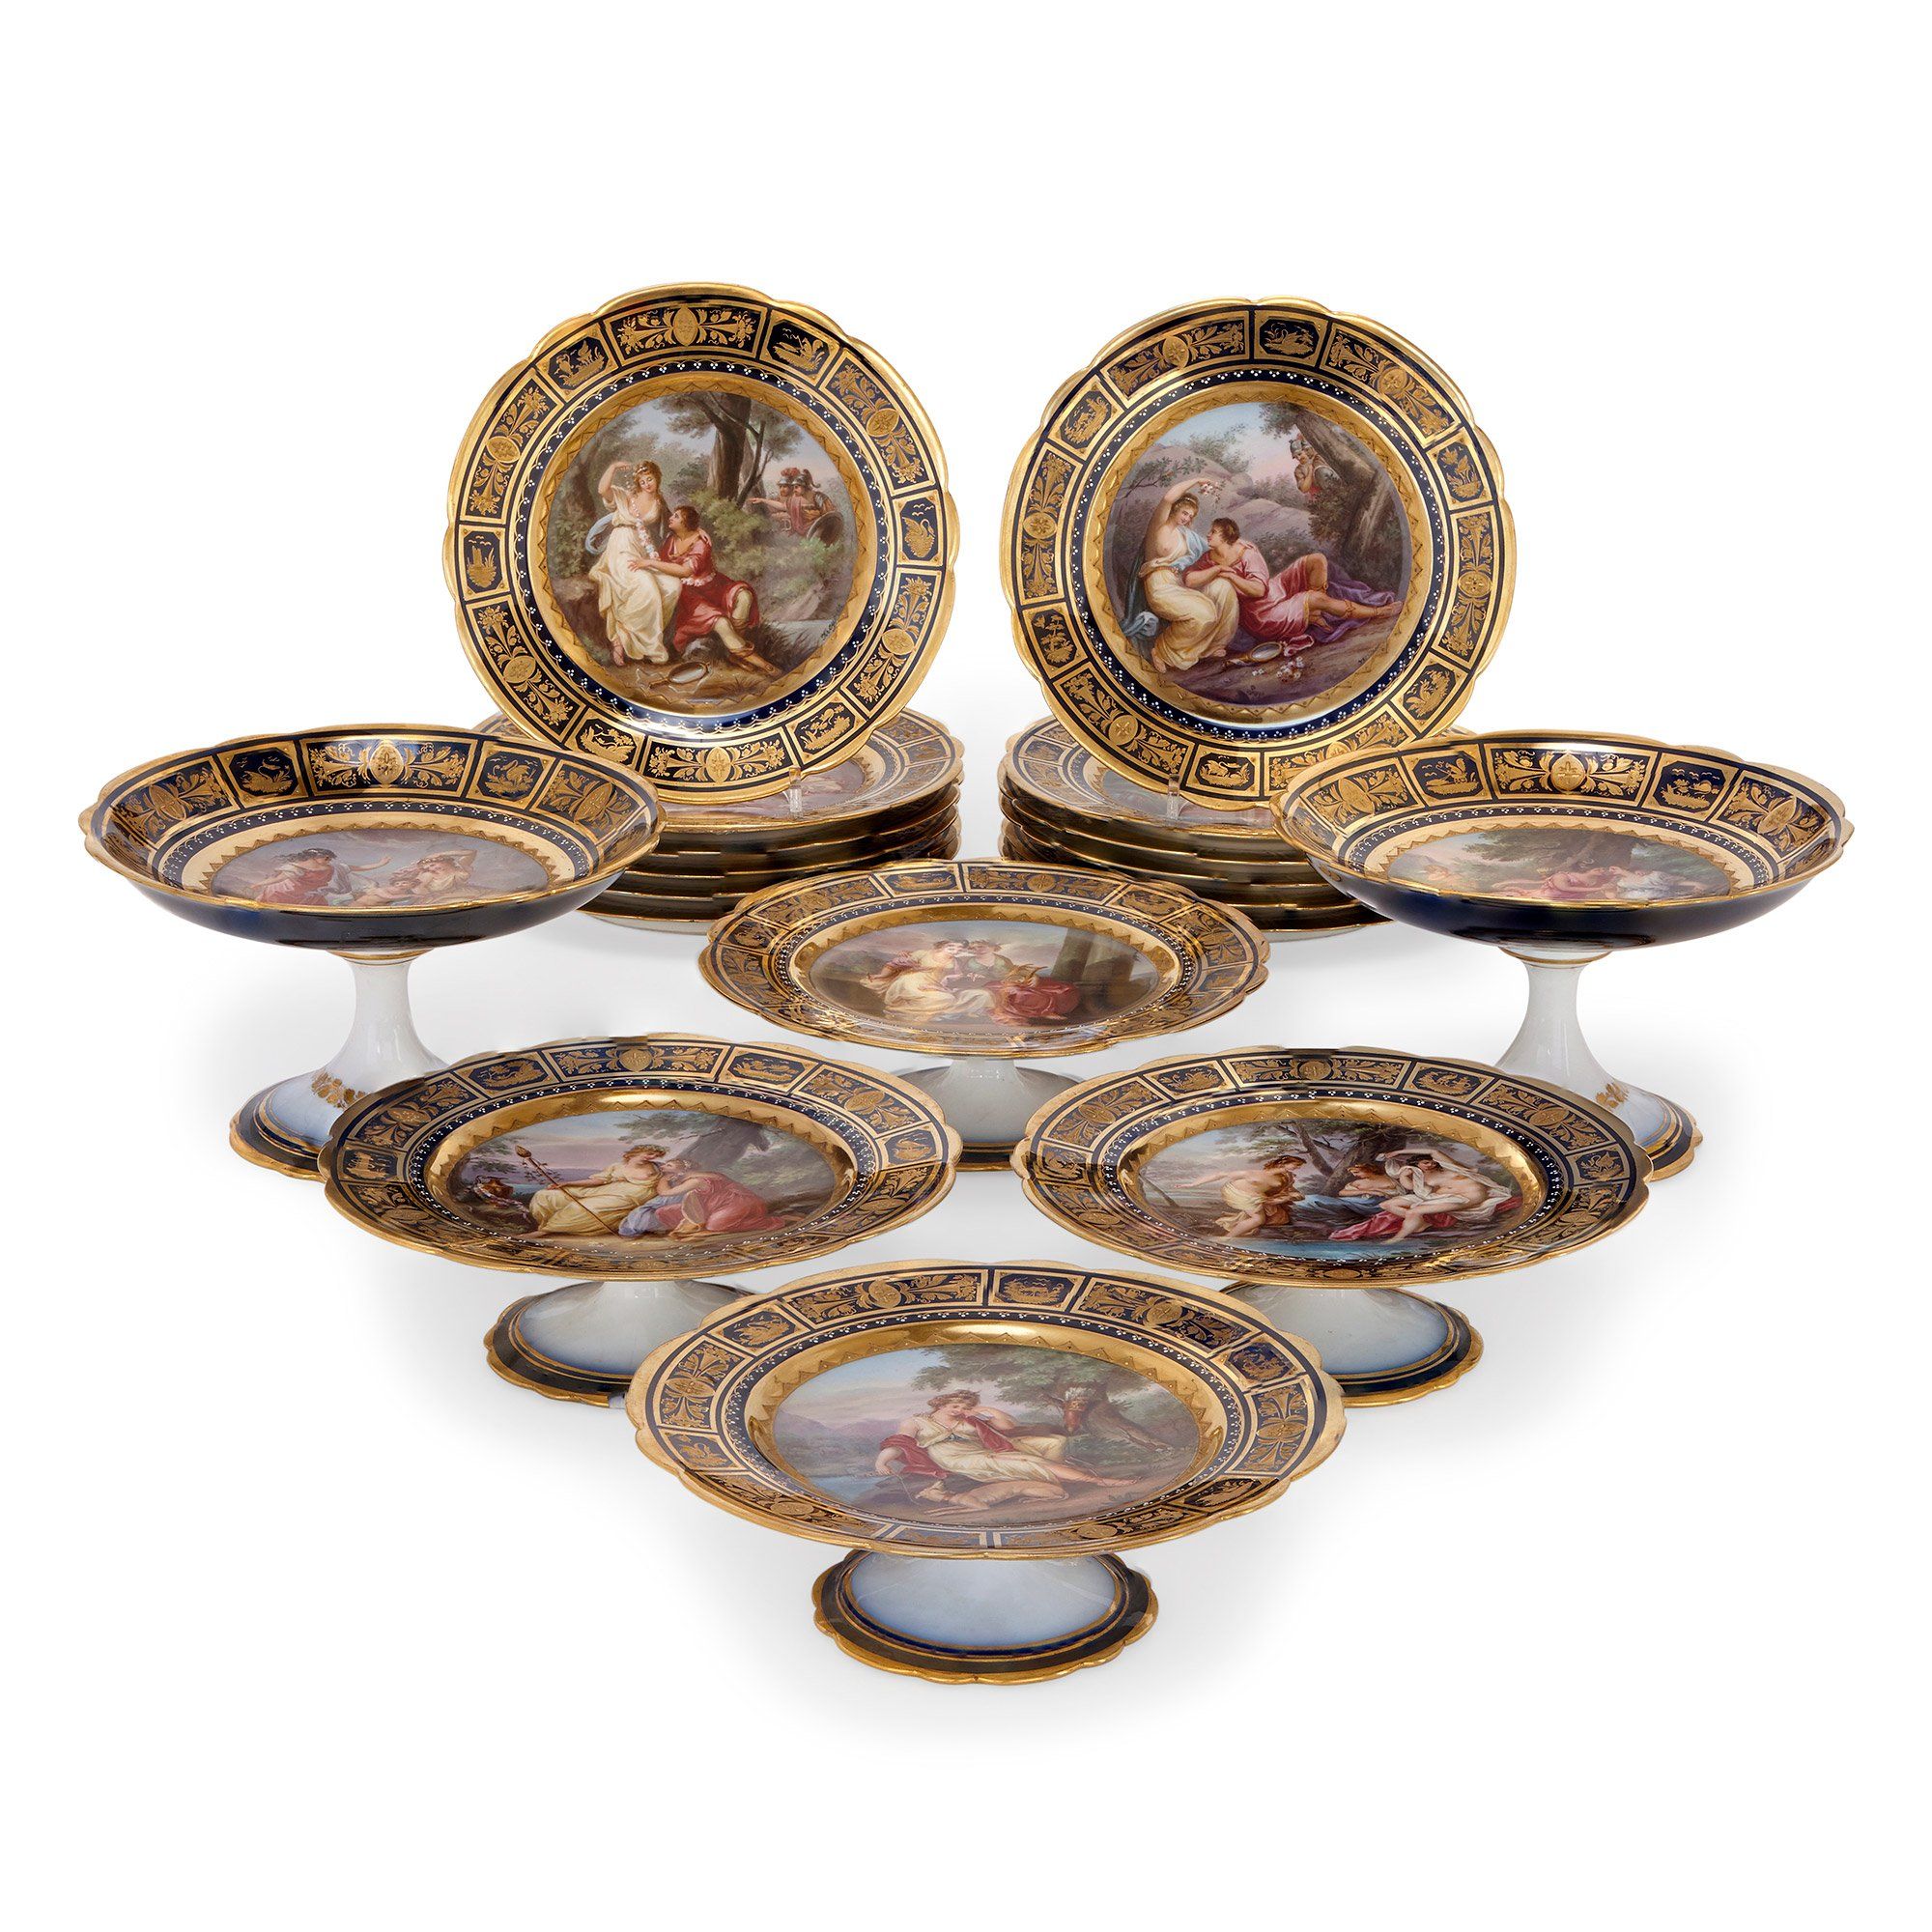 Circus Vrijgevig Eerlijk Royal Vienna porcelain antique dessert service | Mayfair Gallery